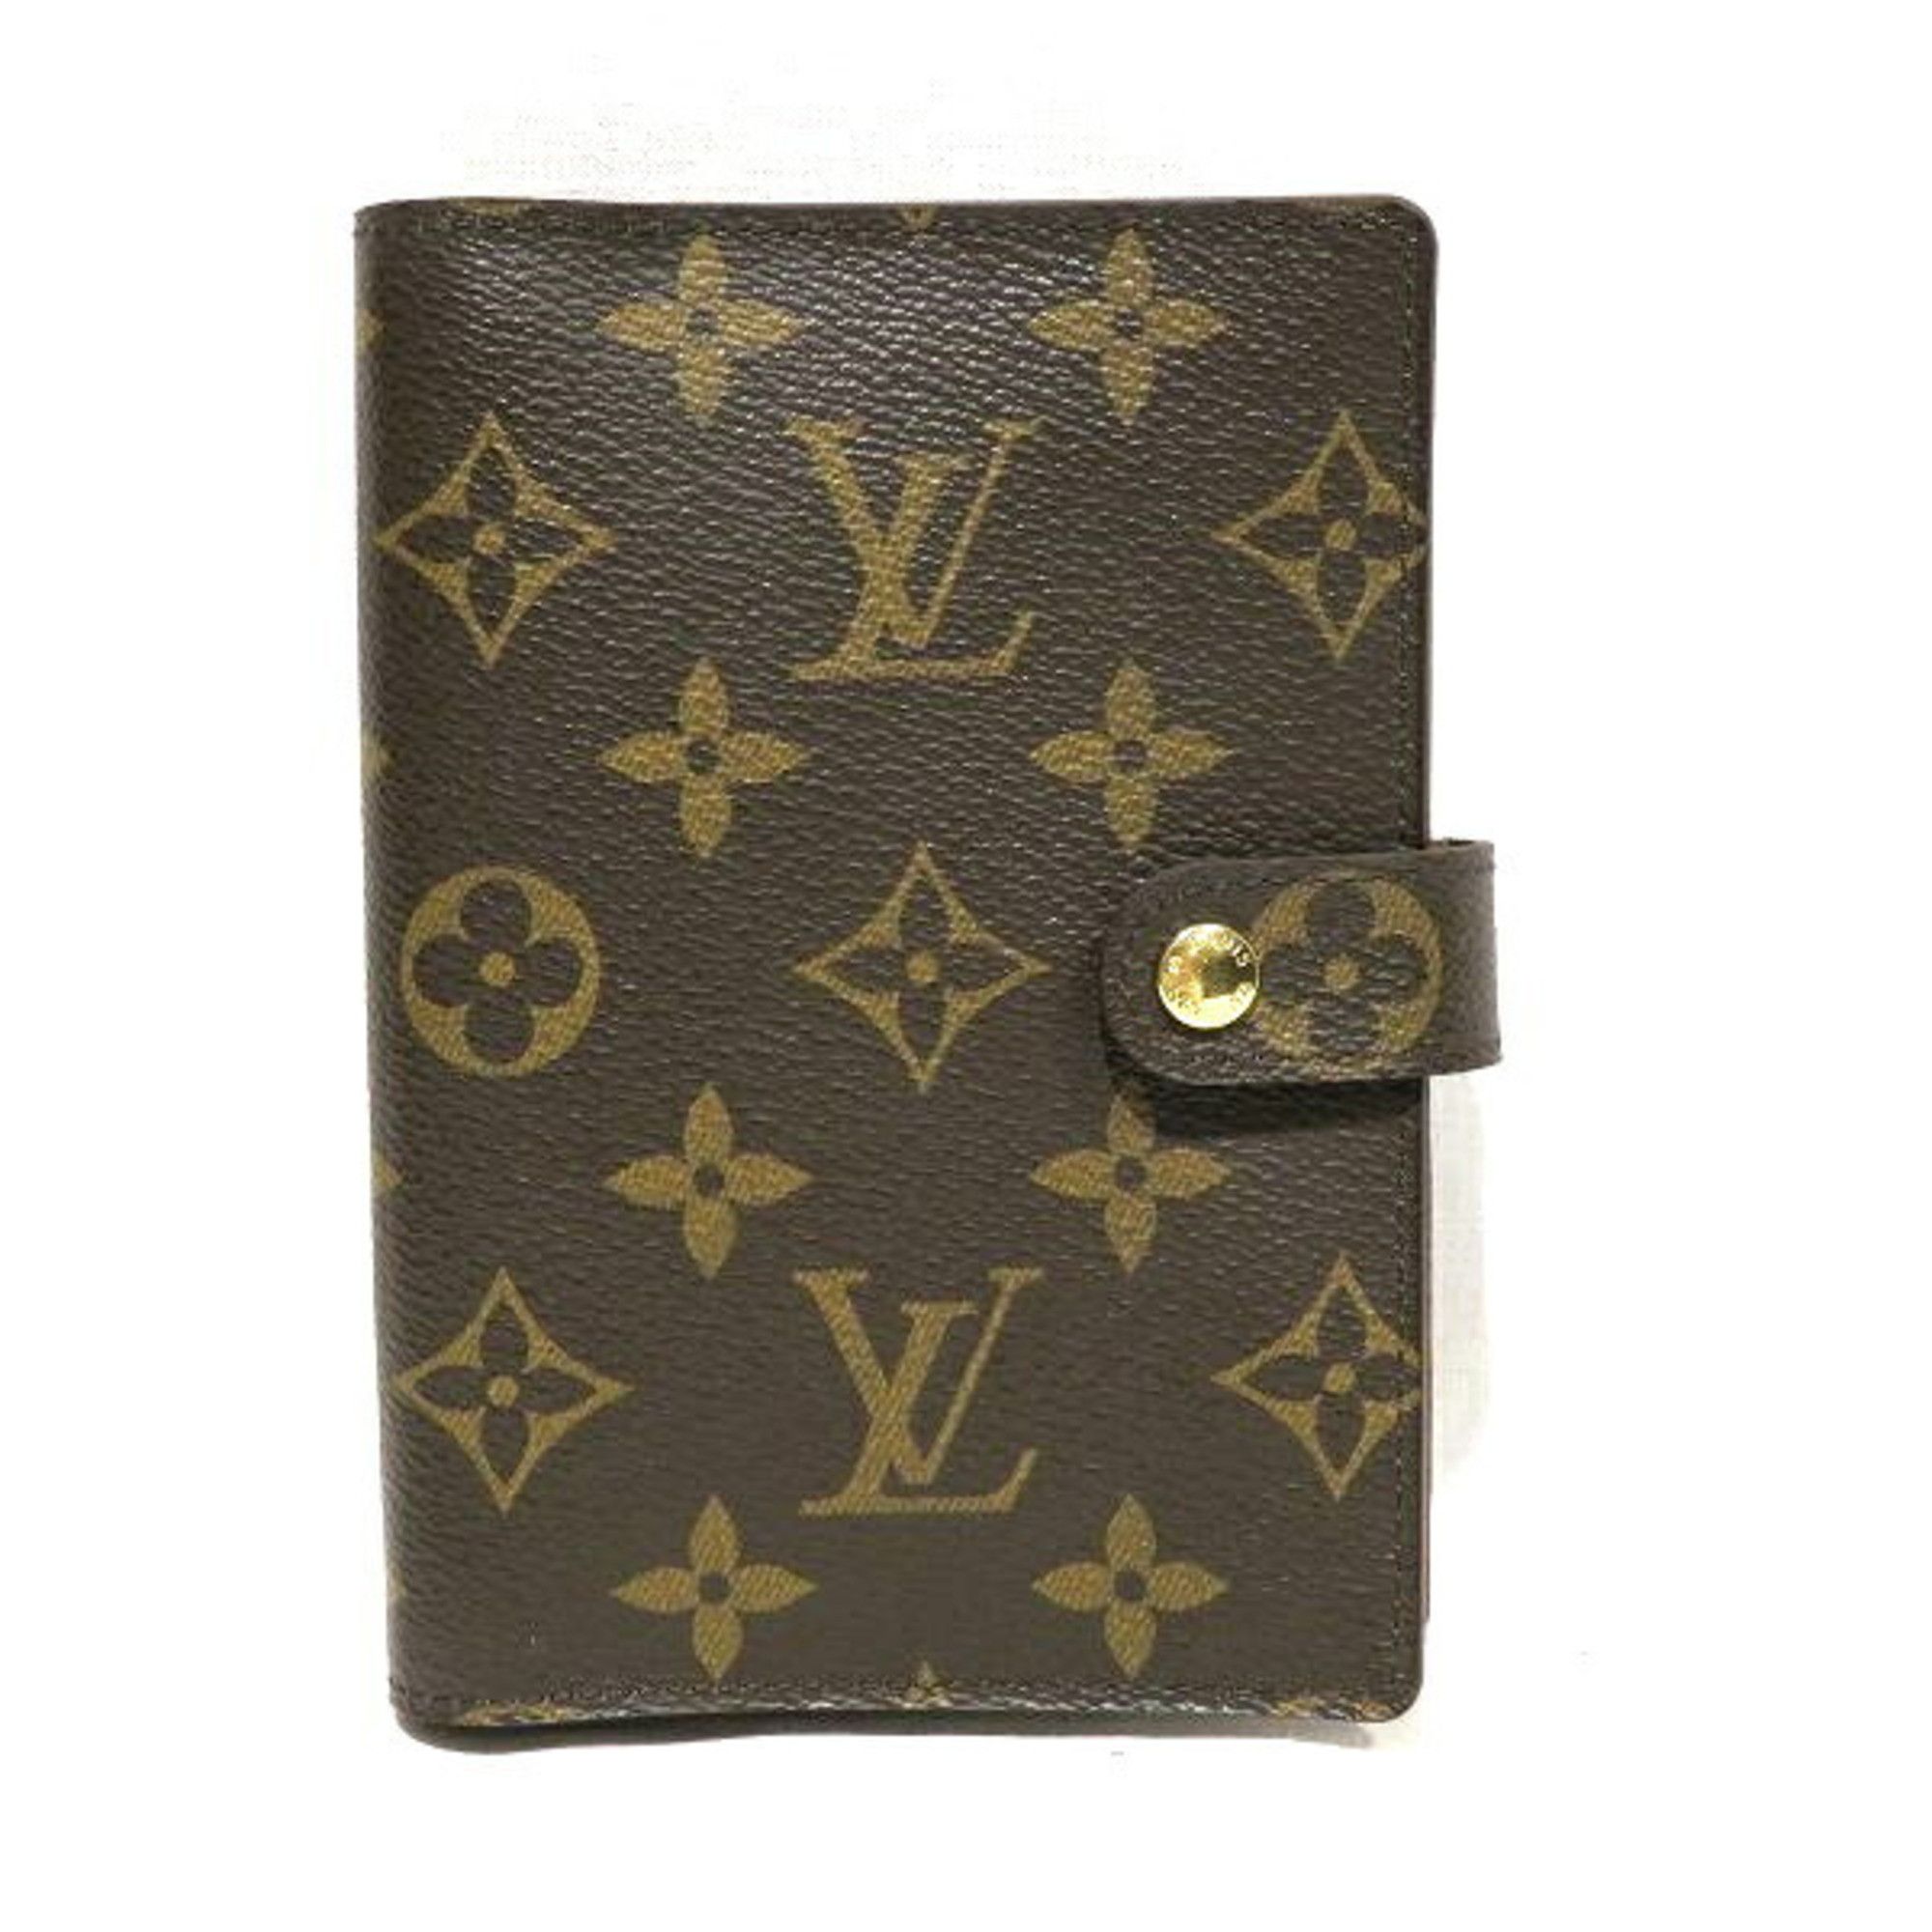 Louis Vuitton Monogram Agenda PM R20005 Brand Accessories Notebook